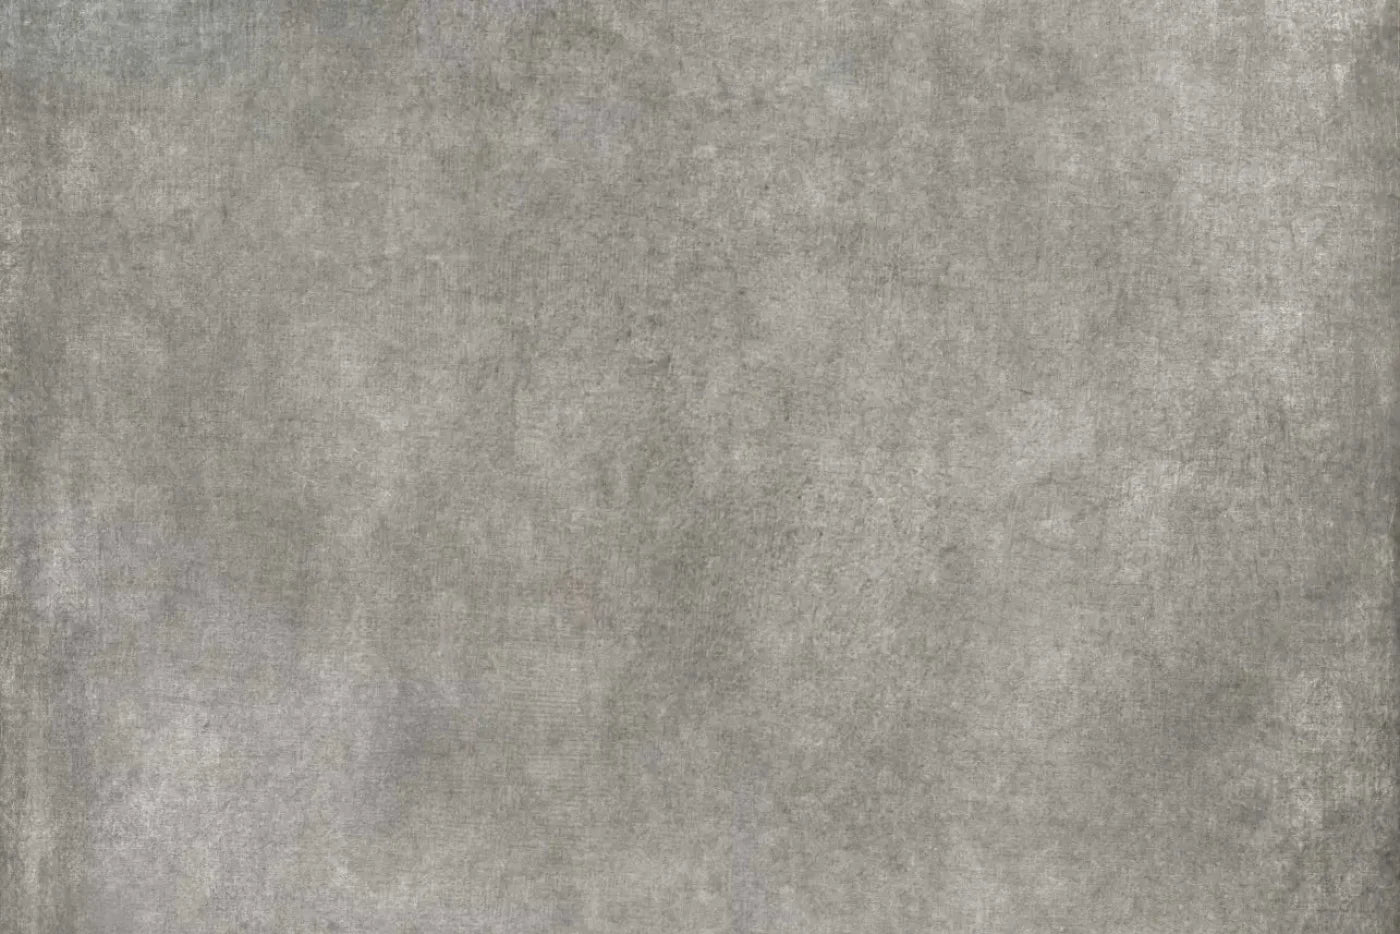 Classic Texture Medium Warm Gray Backdrop